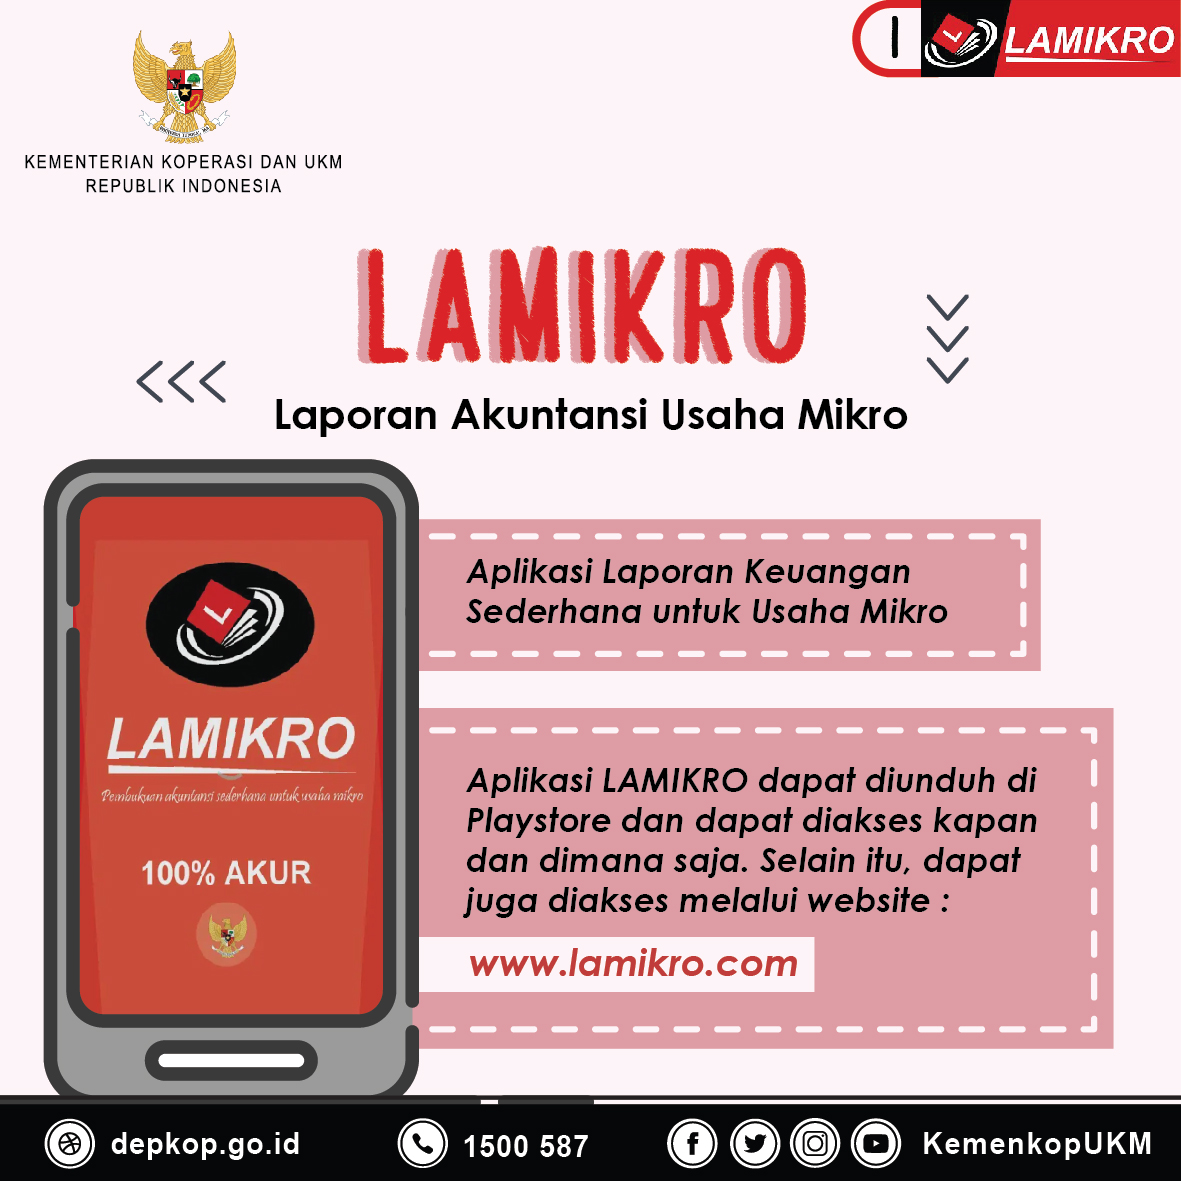 Lamikro, Aplikasi Laporan Keuangan Sederhana Untuk Usaha Mikro